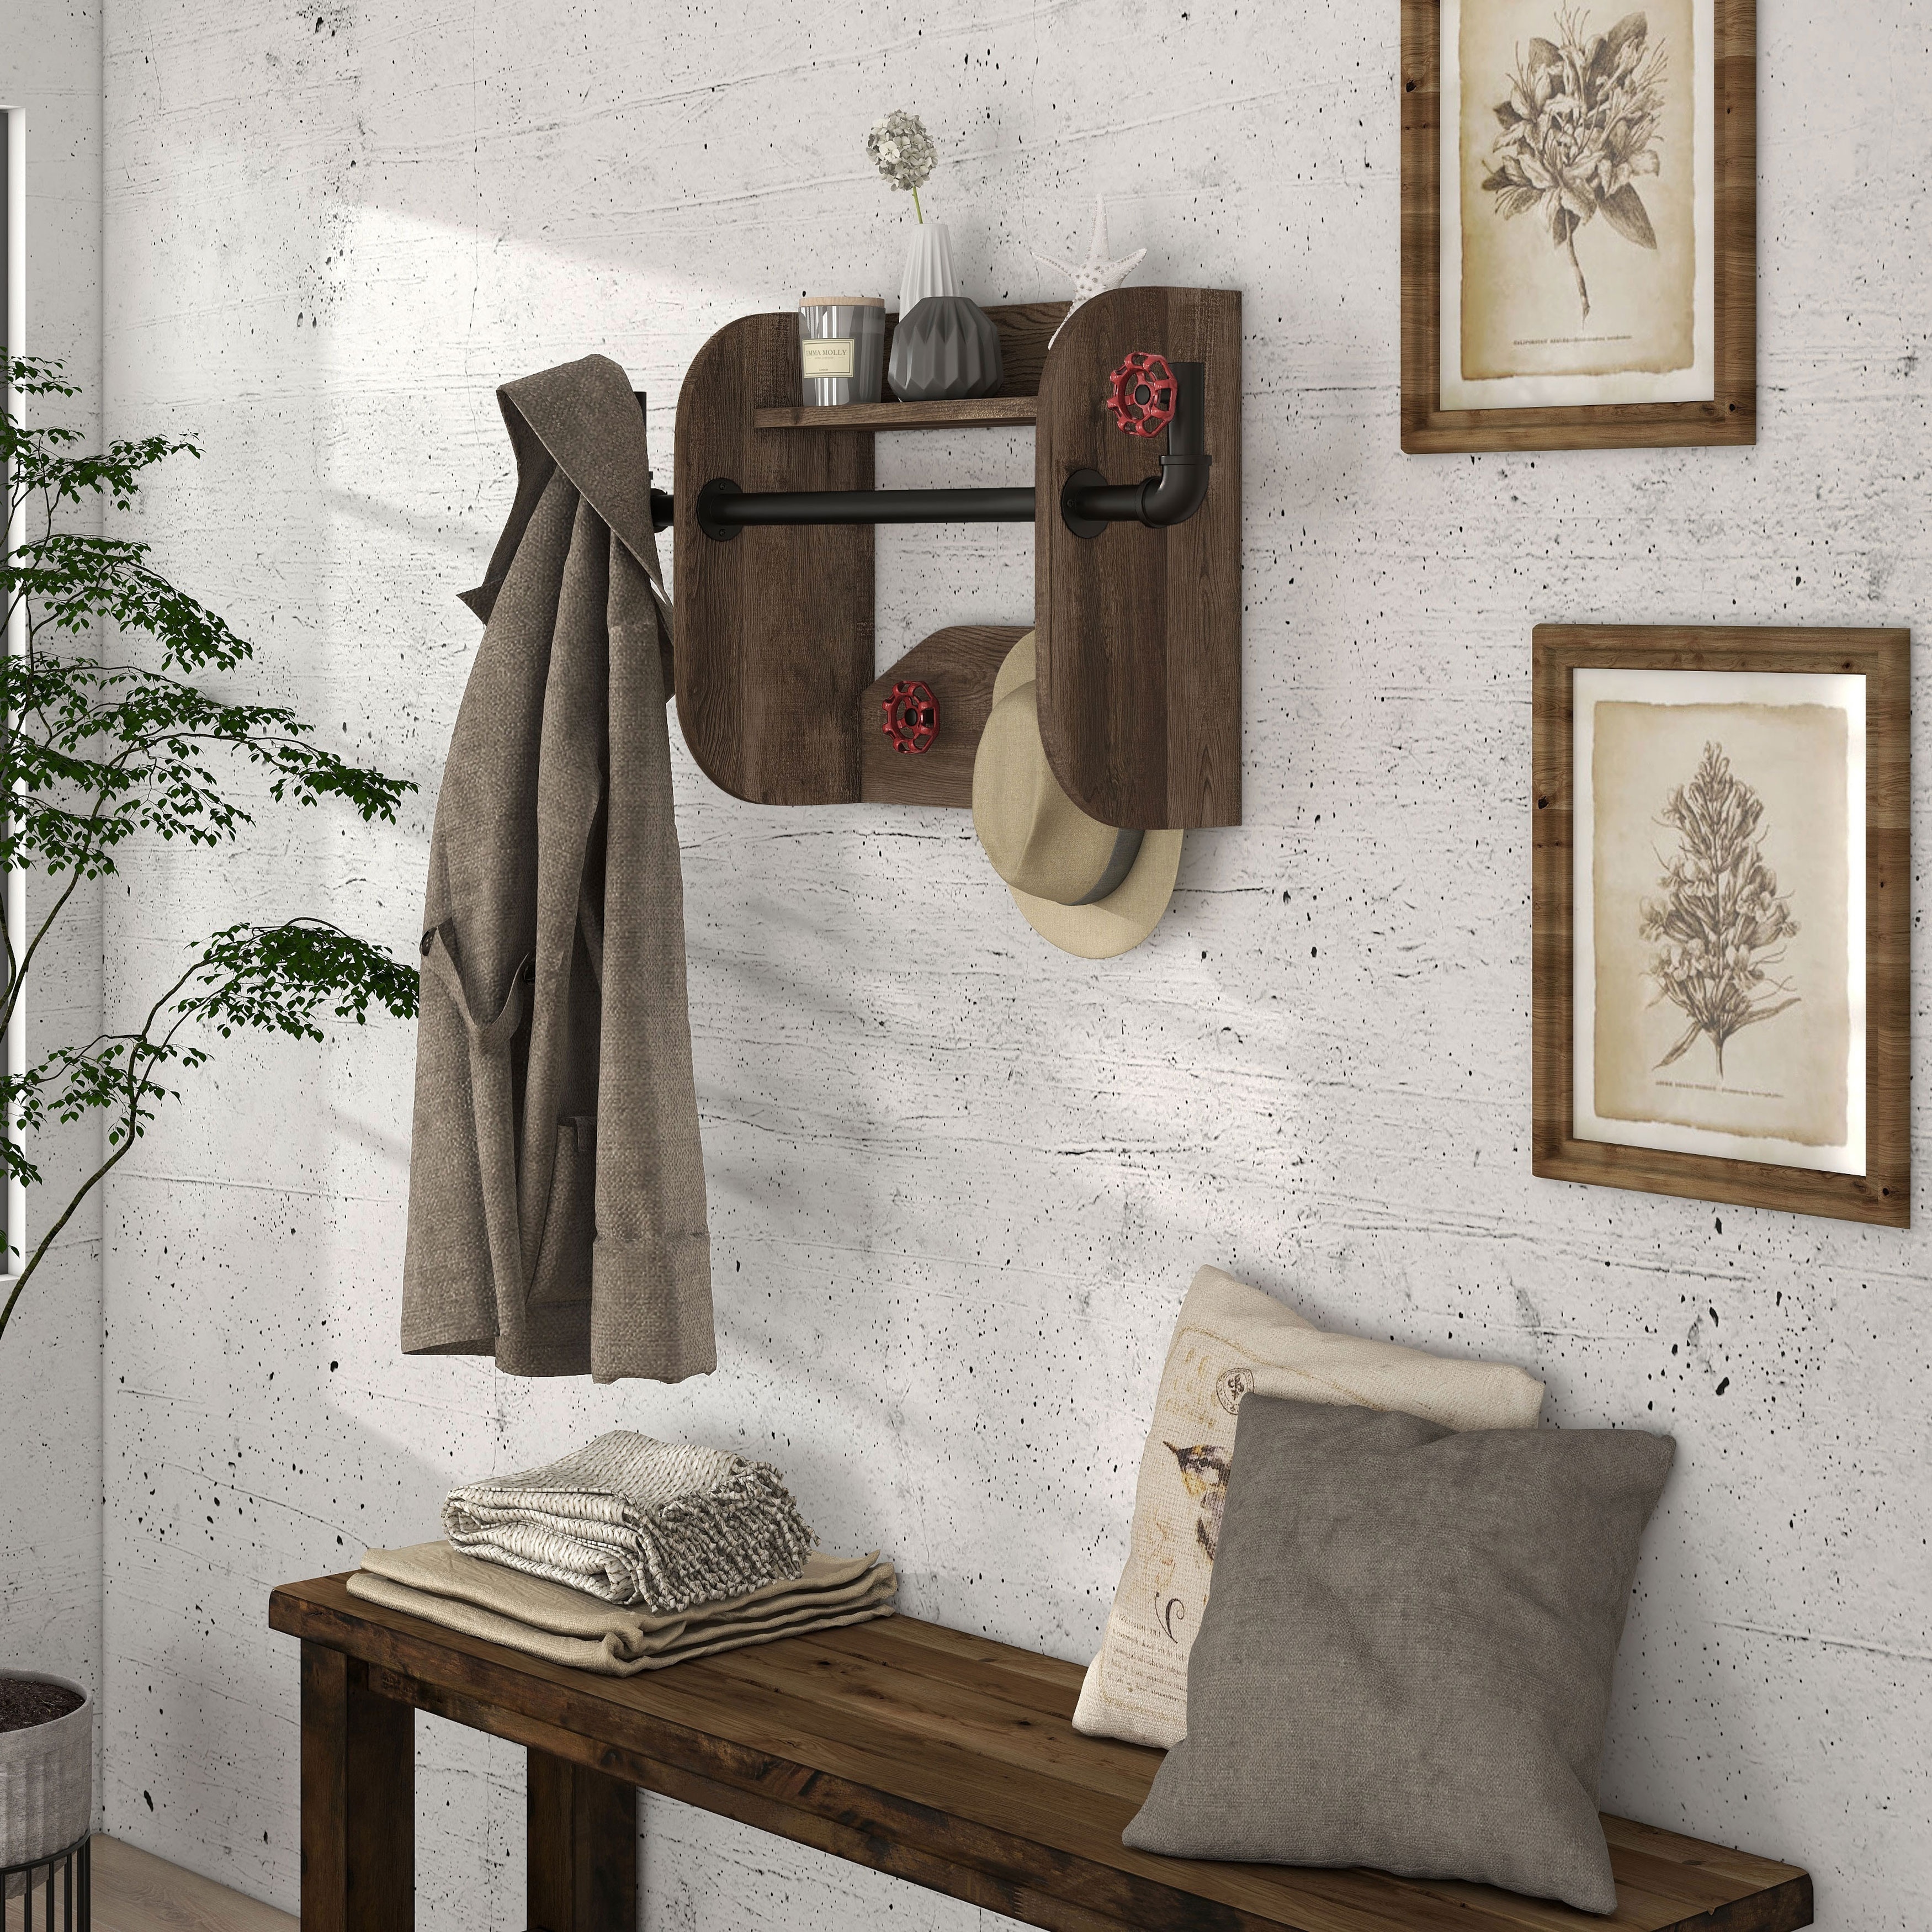 Drakestone Designs Handmade Rustic Reclaimed Wall Mounted Towel Hook